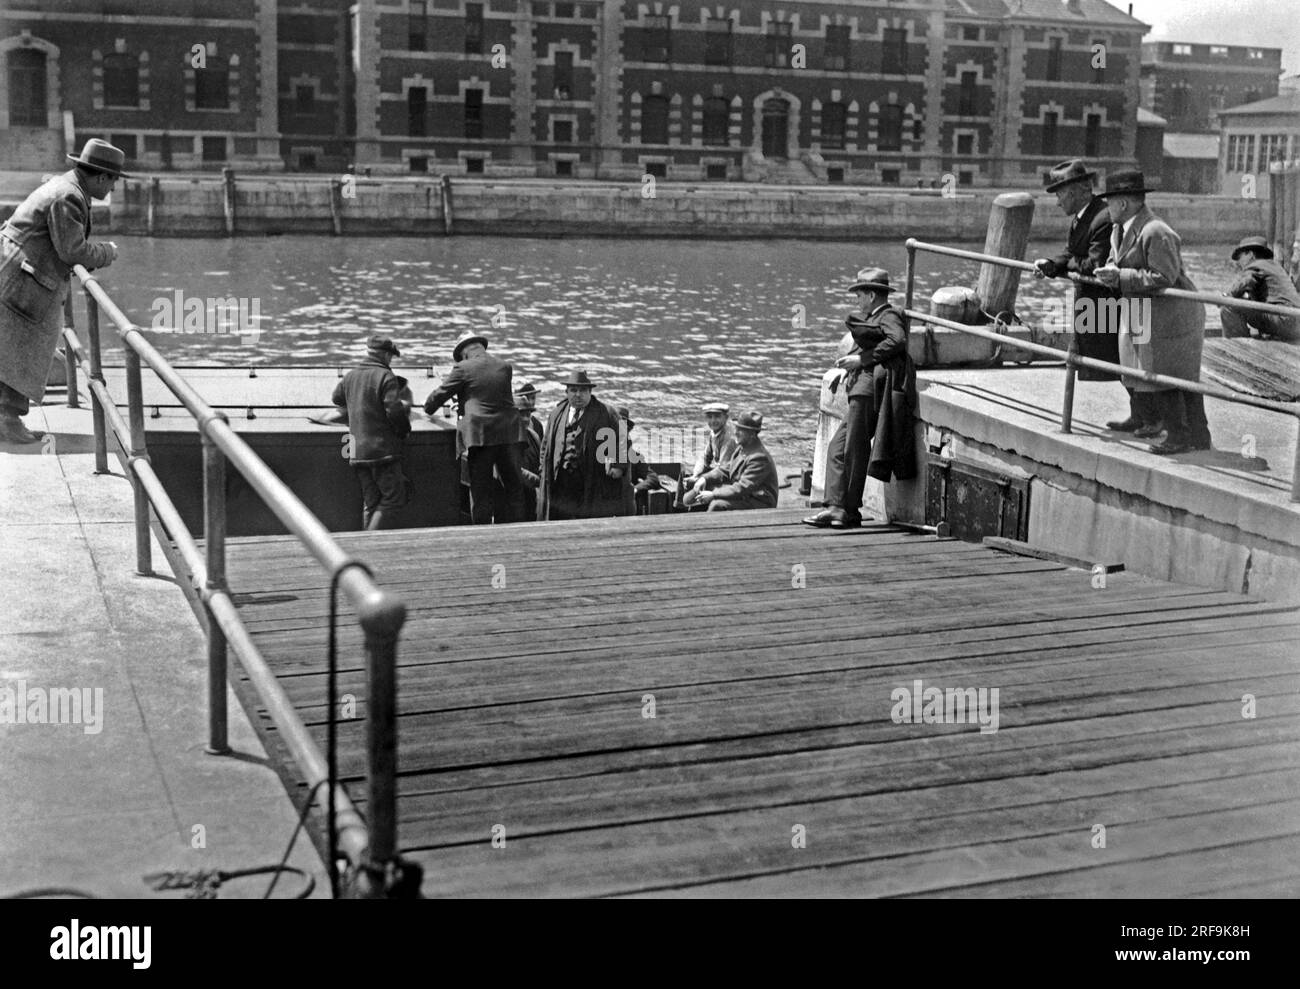 New York, New York: 7 maggio 1926 le foto mostrano i deportati che lasciano Ellis Island per la nave che li riporterà nelle loro terre natali. Gli immigrati in arrivo vengono esaminati attentamente sull'isola e non tutti possono rimanere. Foto Stock